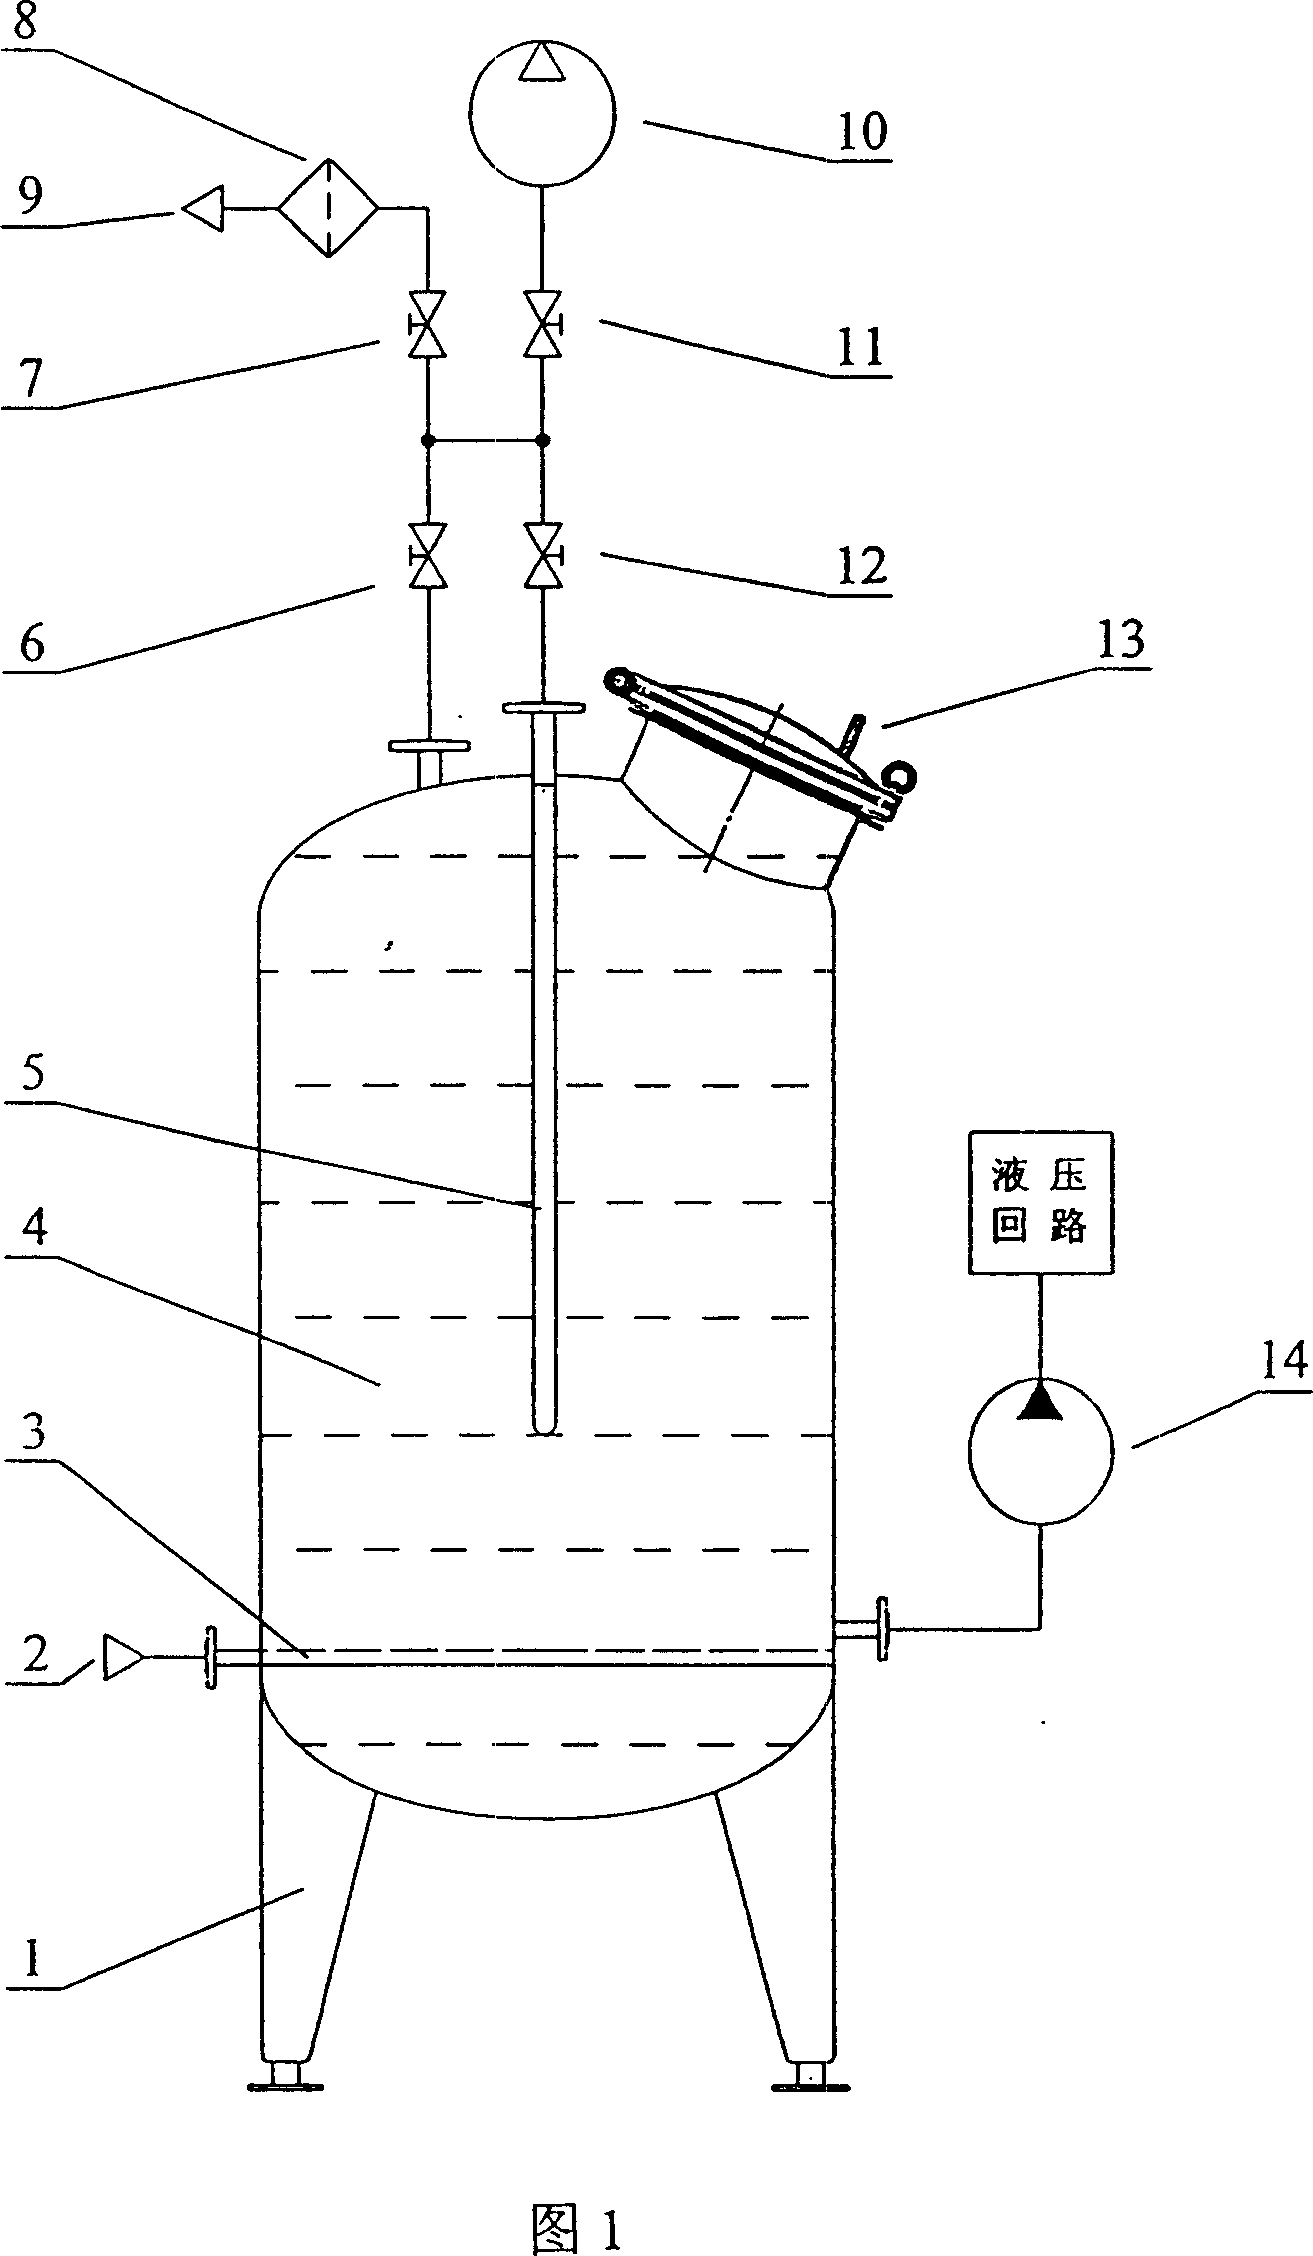 Pressure oil box for removing gas in hydraulic oil liquid